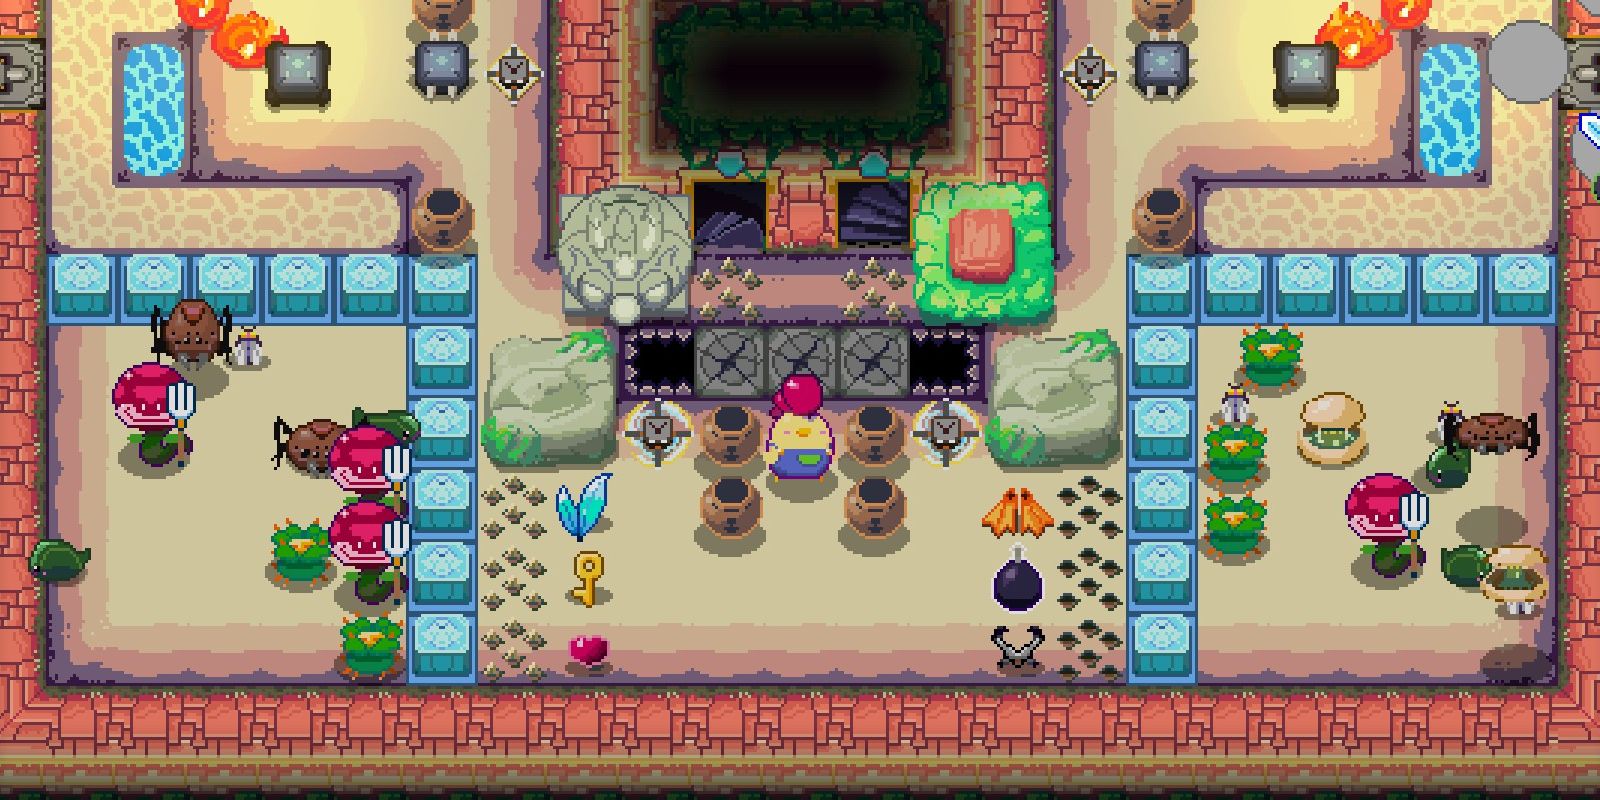 Un personaje de jugador de pollo se encuentra en medio de una mazmorra de 16 bits similar a Zelda en Super Dungeon Maker, rodeado de ollas y grietas en el piso.  Varias trampas y enemigos se encuentran dispersos por toda la habitación.